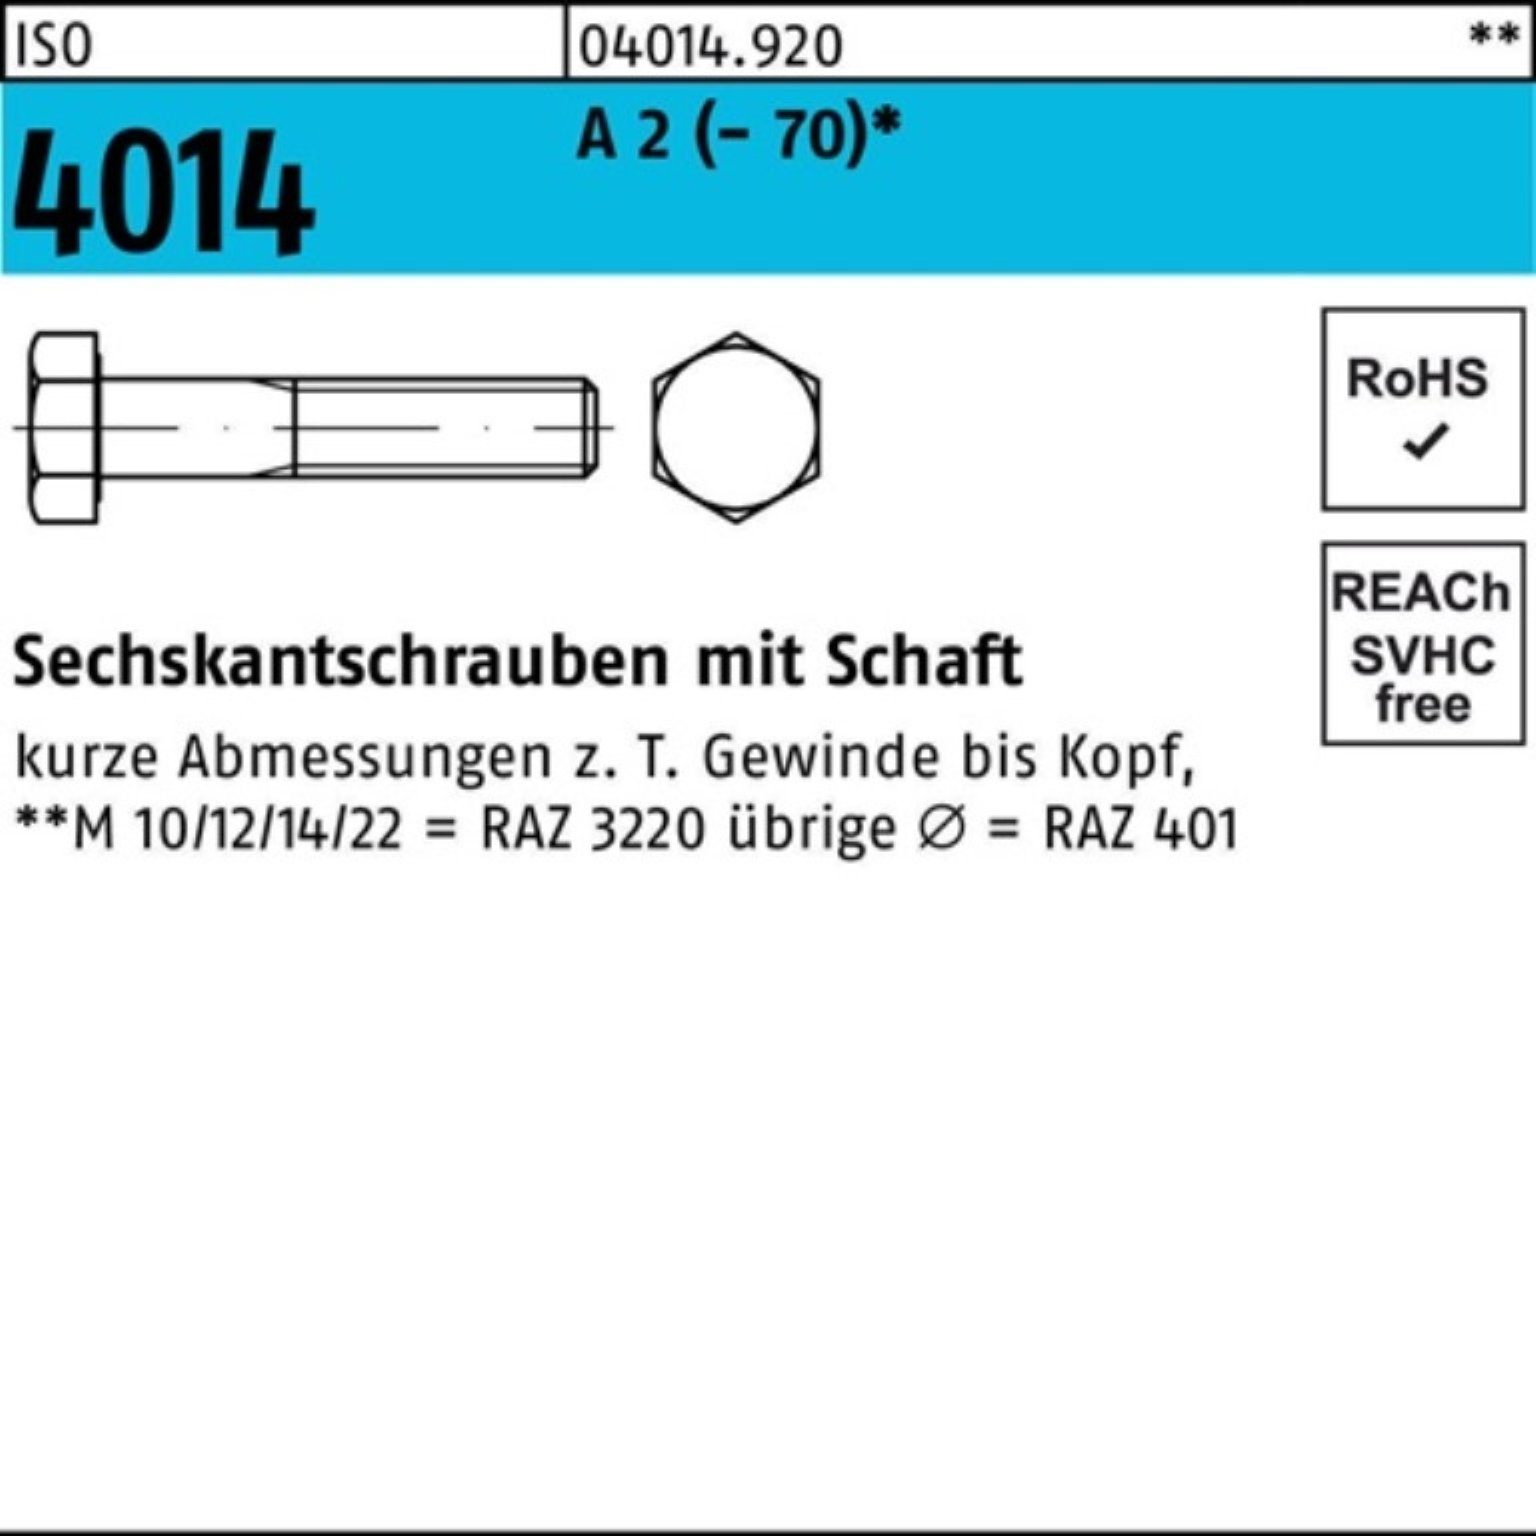 Bufab Sechskantschraube 100er Pack Sechskantschraube ISO 4014 Schaft M16x 90 A 2 (70) 25 St